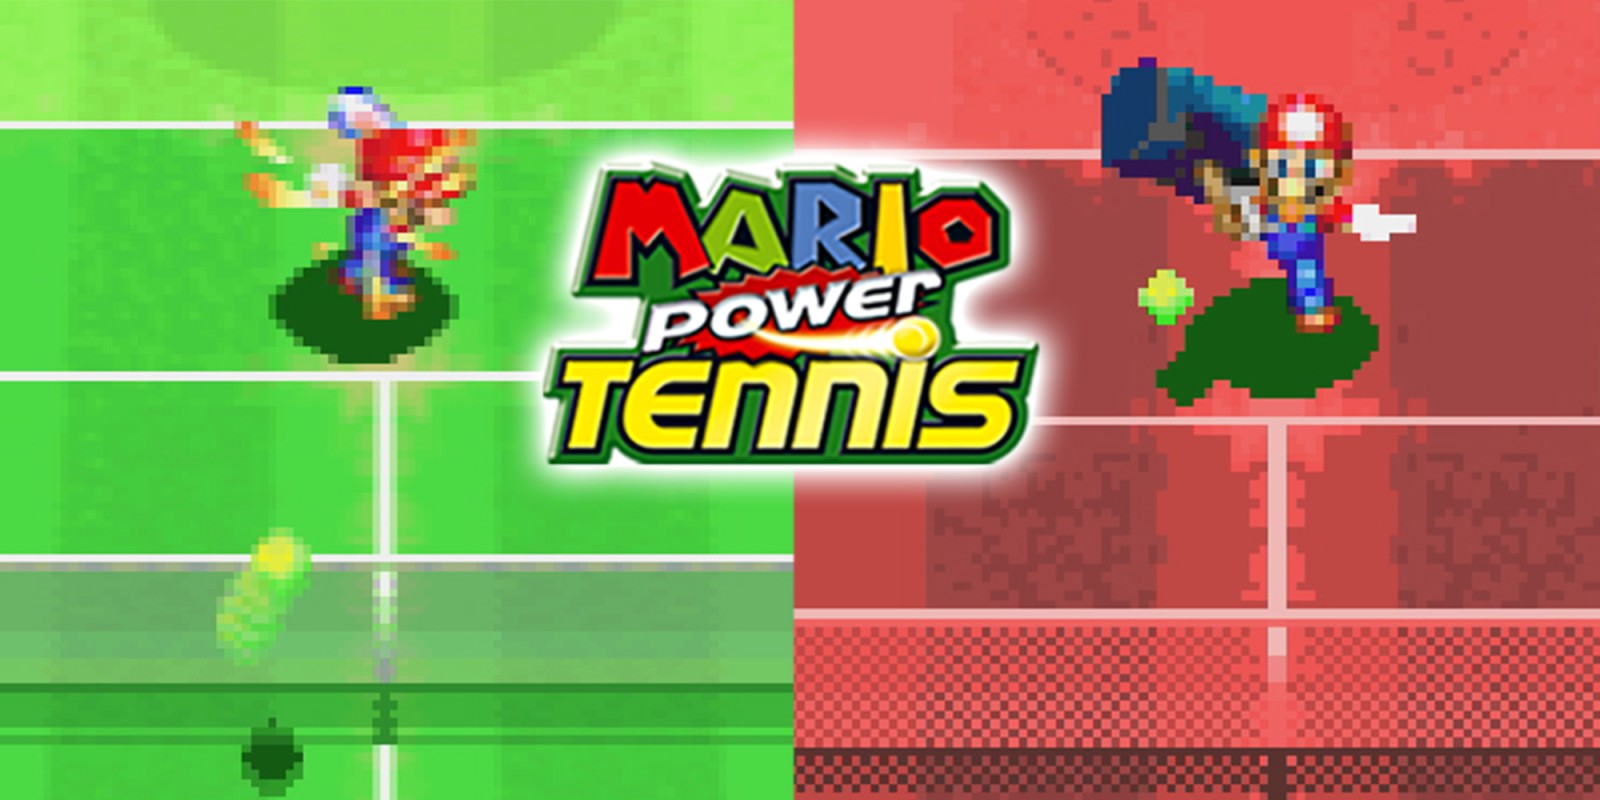 Mario Power Tennis | Game Boy Advance | Games | Nintendo1600 x 800